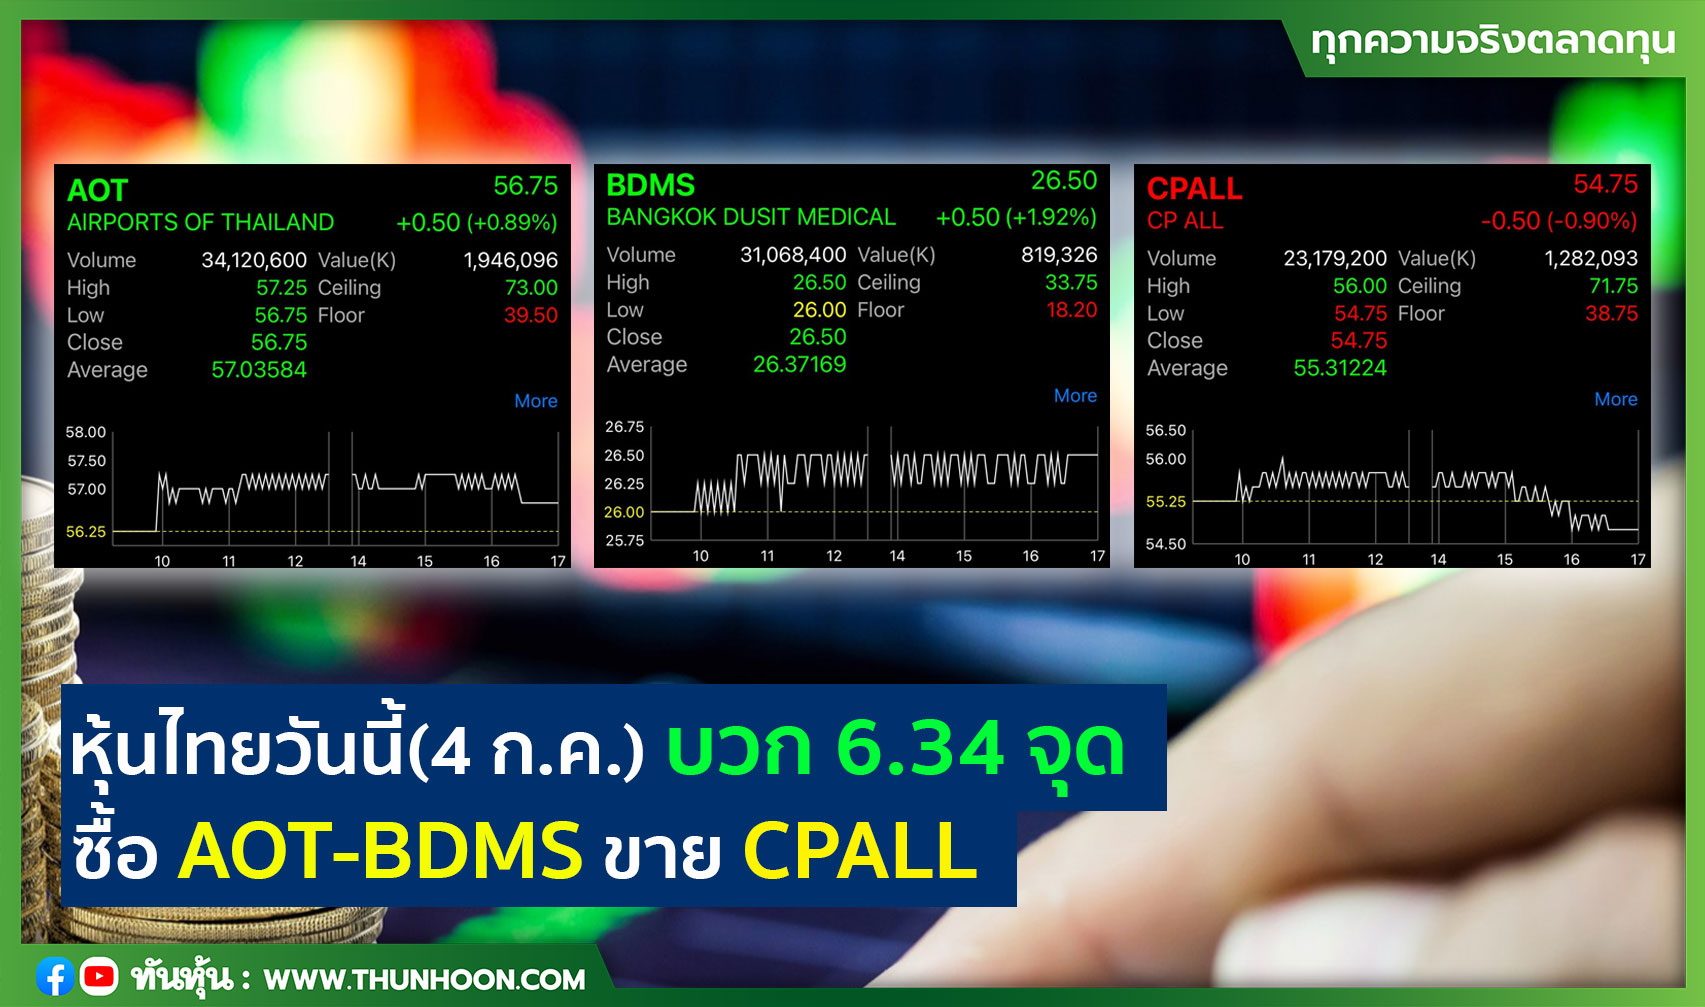 หุ้นไทยวันนี้(4 ก.ค.) บวก 6.34 จุด  ซื้อ AOT-BDMS ขาย CPALL